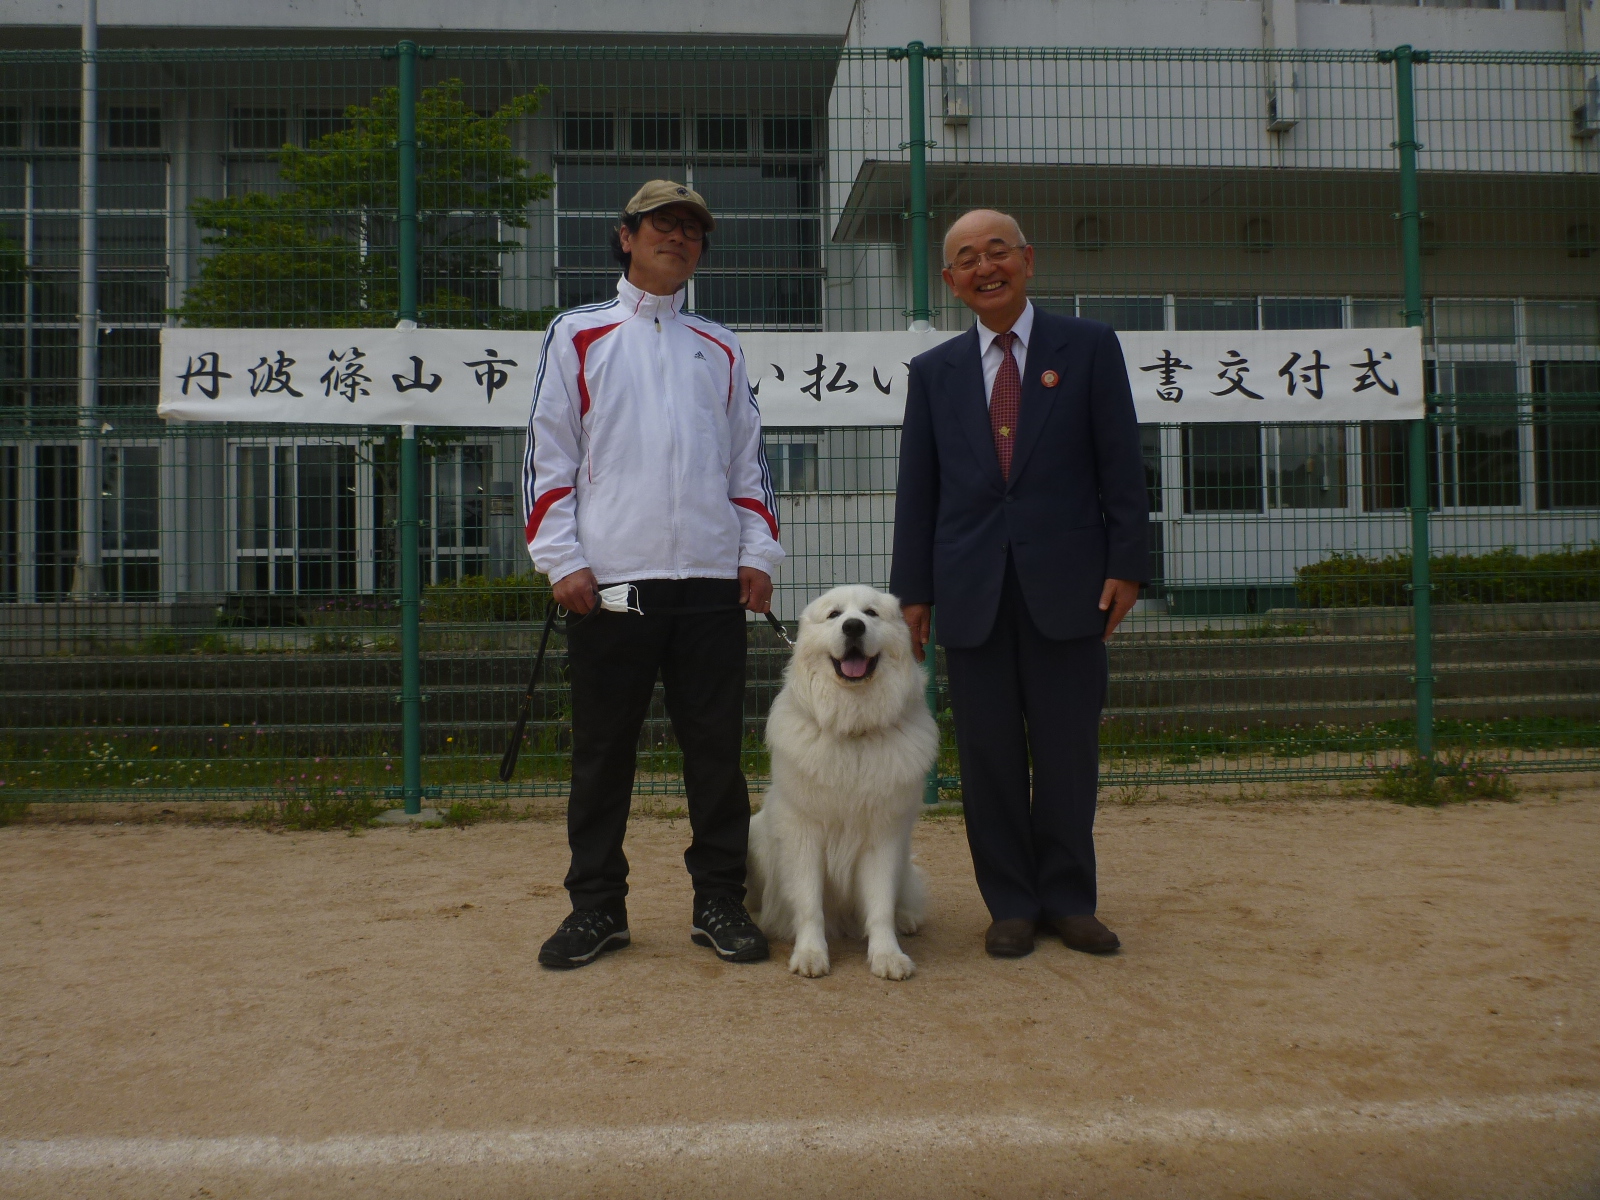 グラウンドで、新しくサル追い払い犬に認定された犬と飼い主、市長の記念撮影。